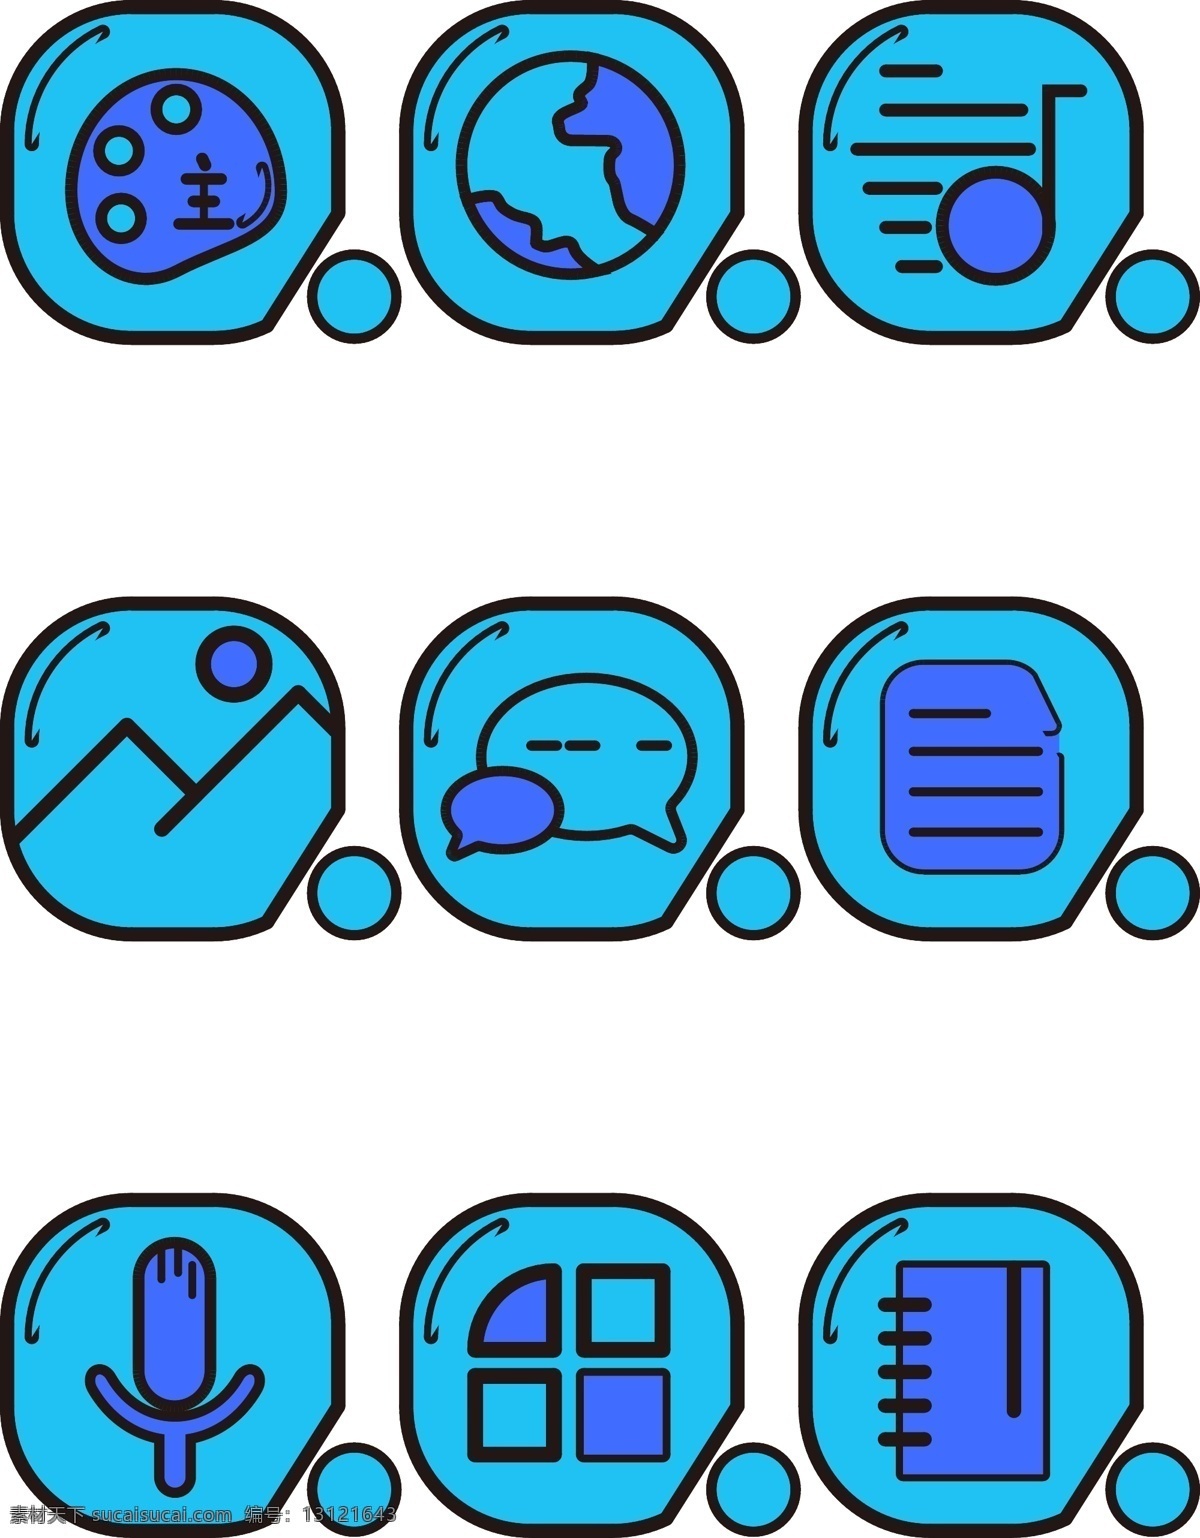 手机 主题 蓝紫色 卡通 app 小 图标素材 手机主题 手机小图标